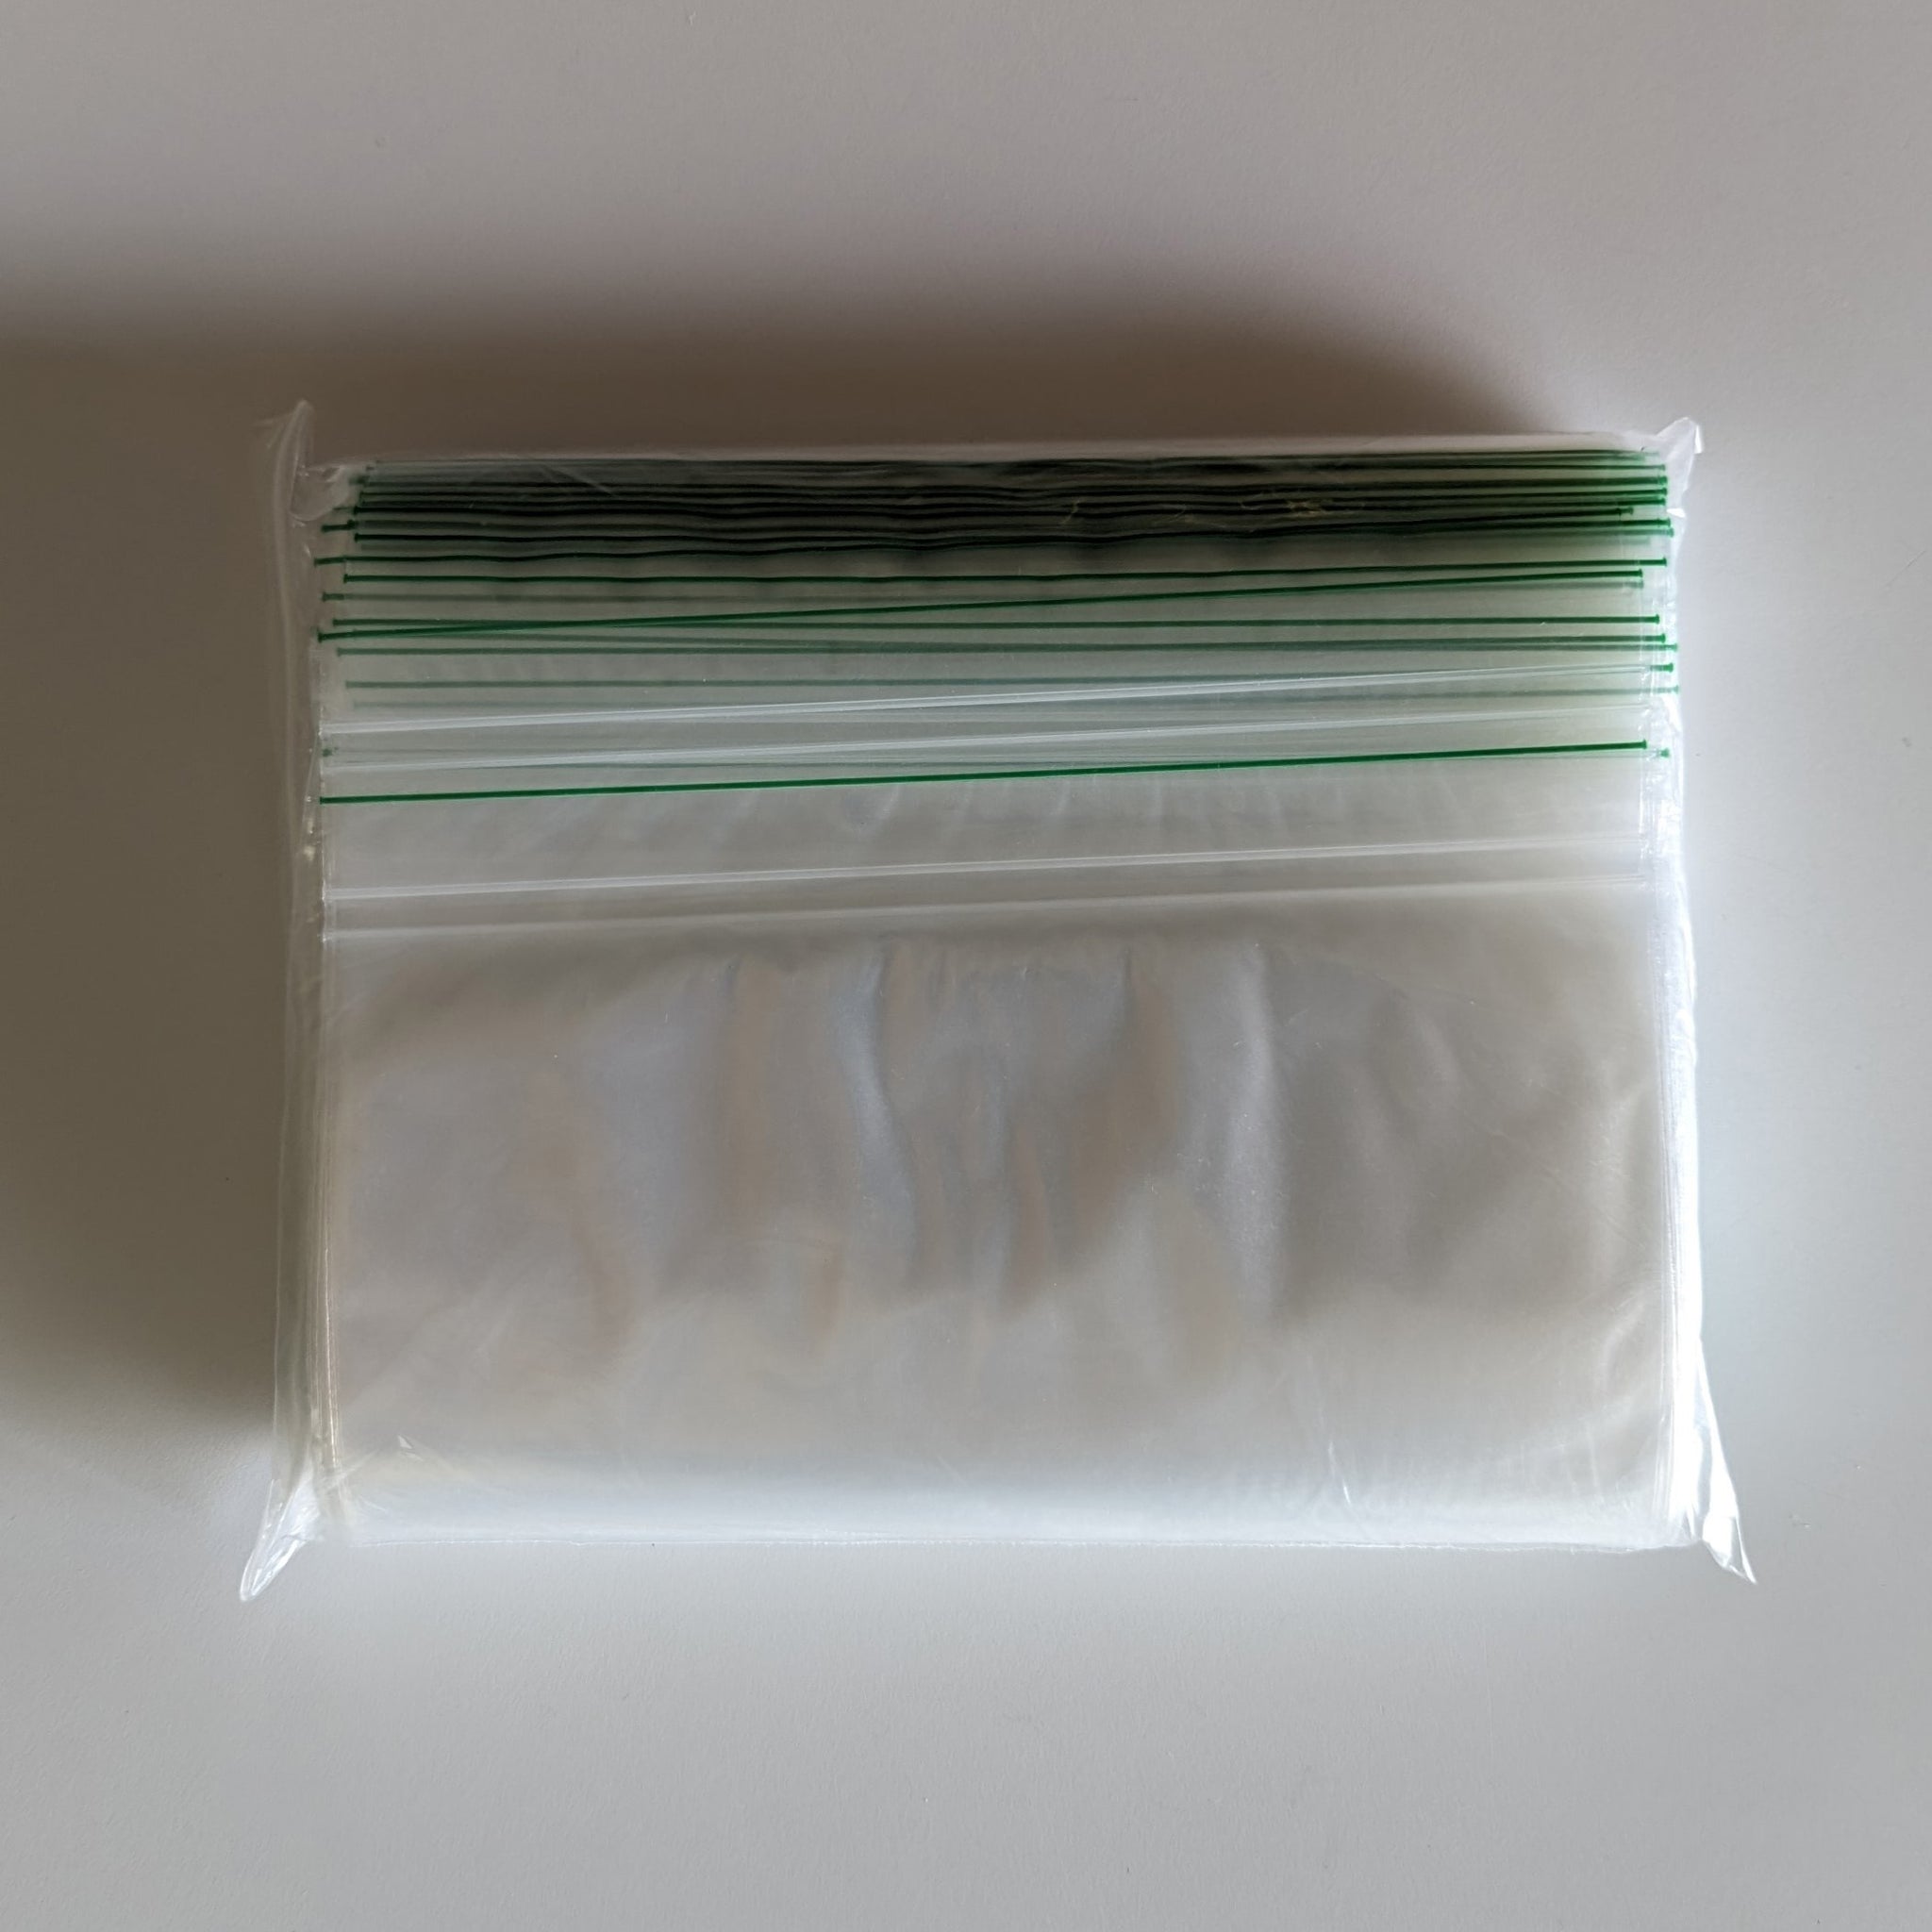 Bundle of 4 Quart size Compostable Zip bags.